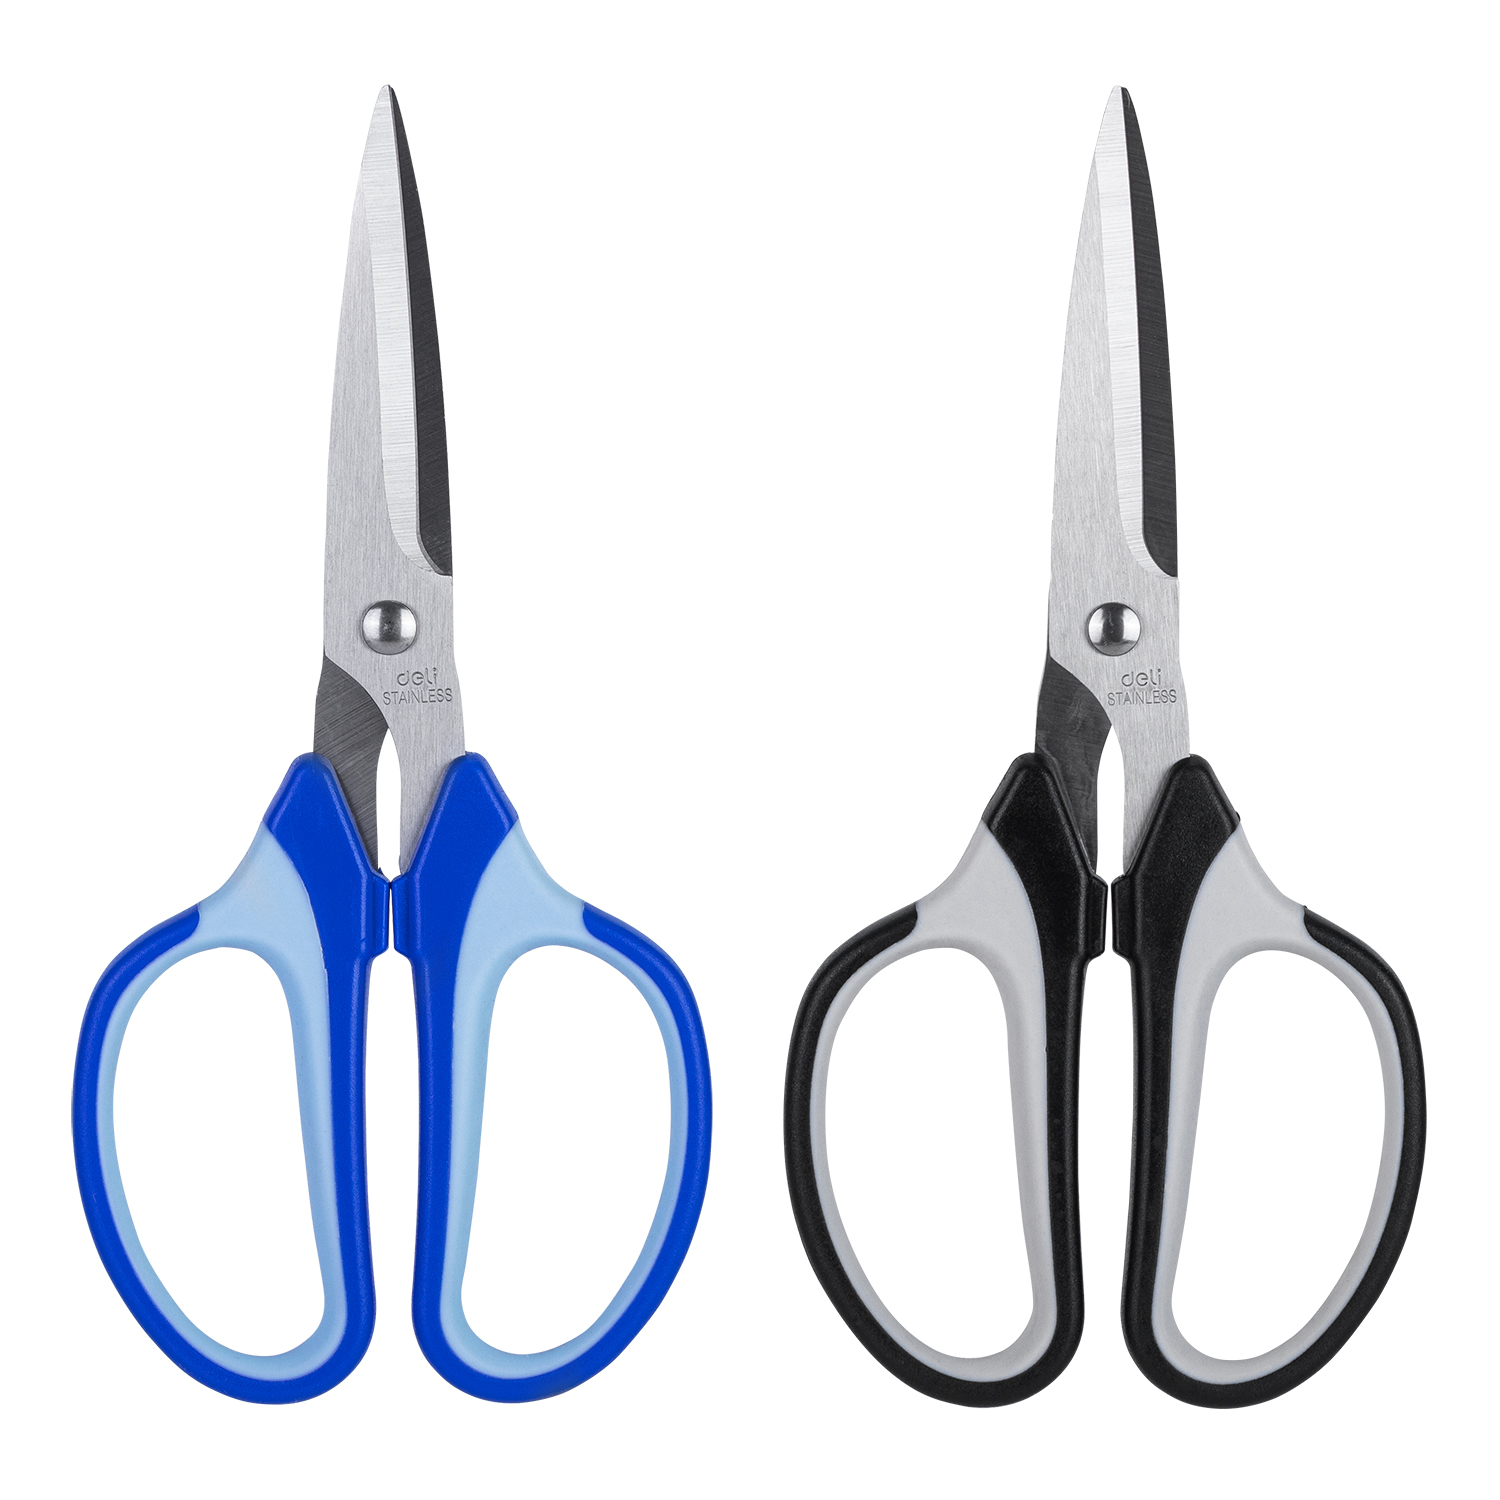 Deli-E6001 Scissors